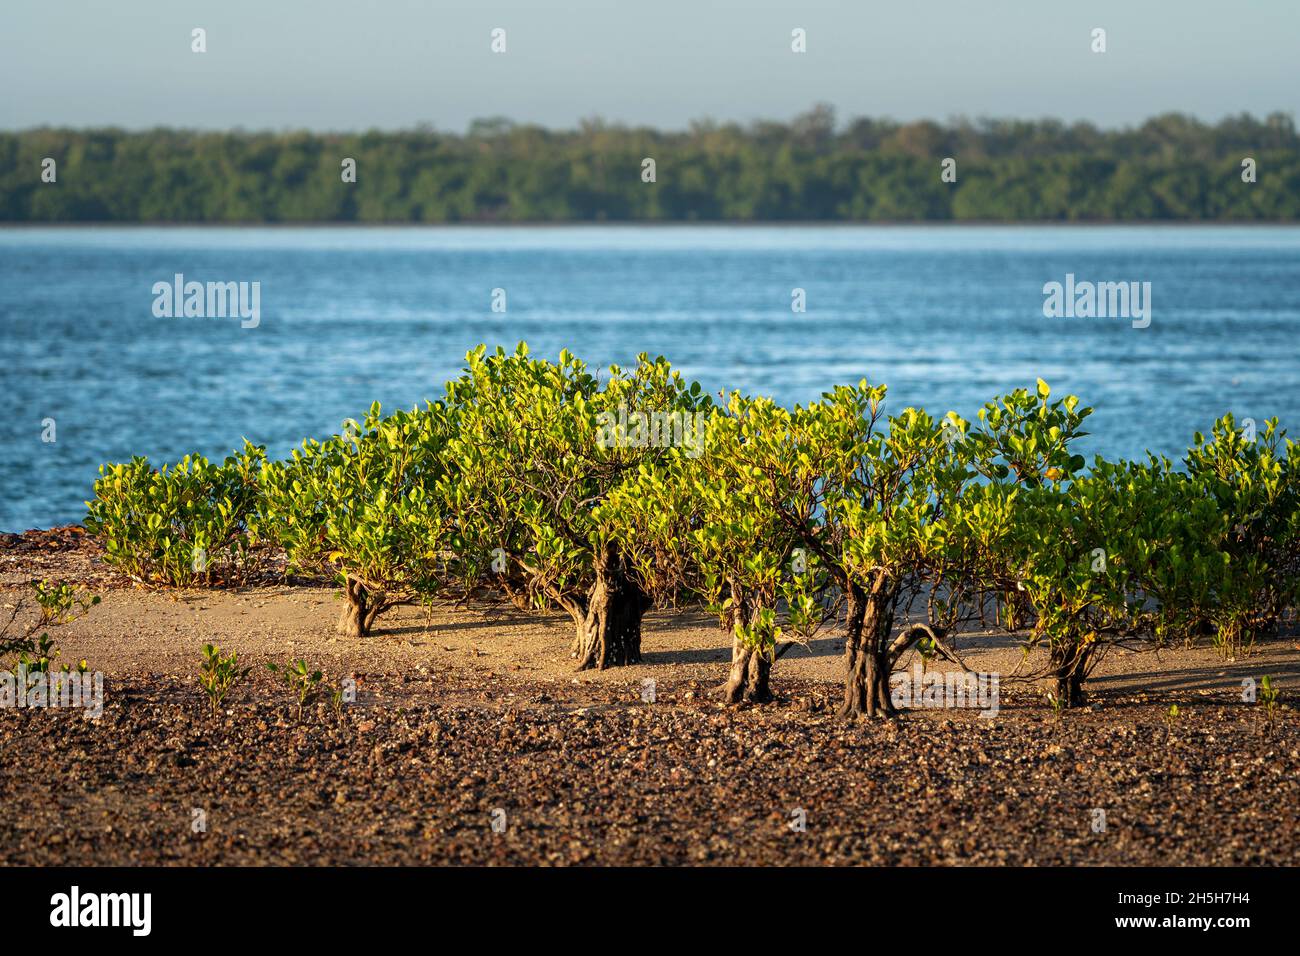 Club Mangroves (Aegialitis annullato) a bassa marea sulla spiaggia di pietra. Cape York Peninsula, Queensland Australia Foto Stock